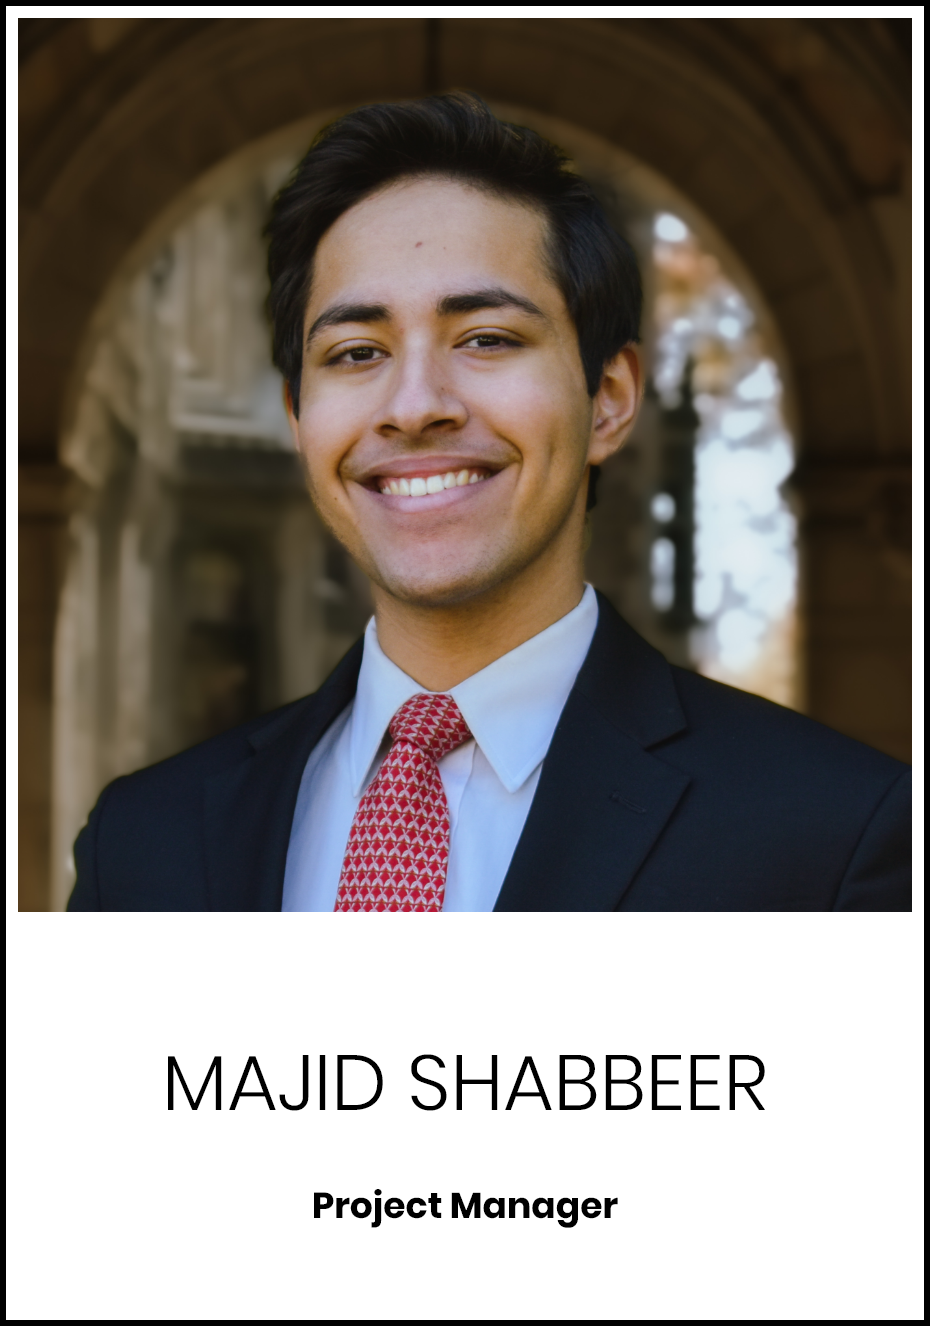 Majid Shabbeer